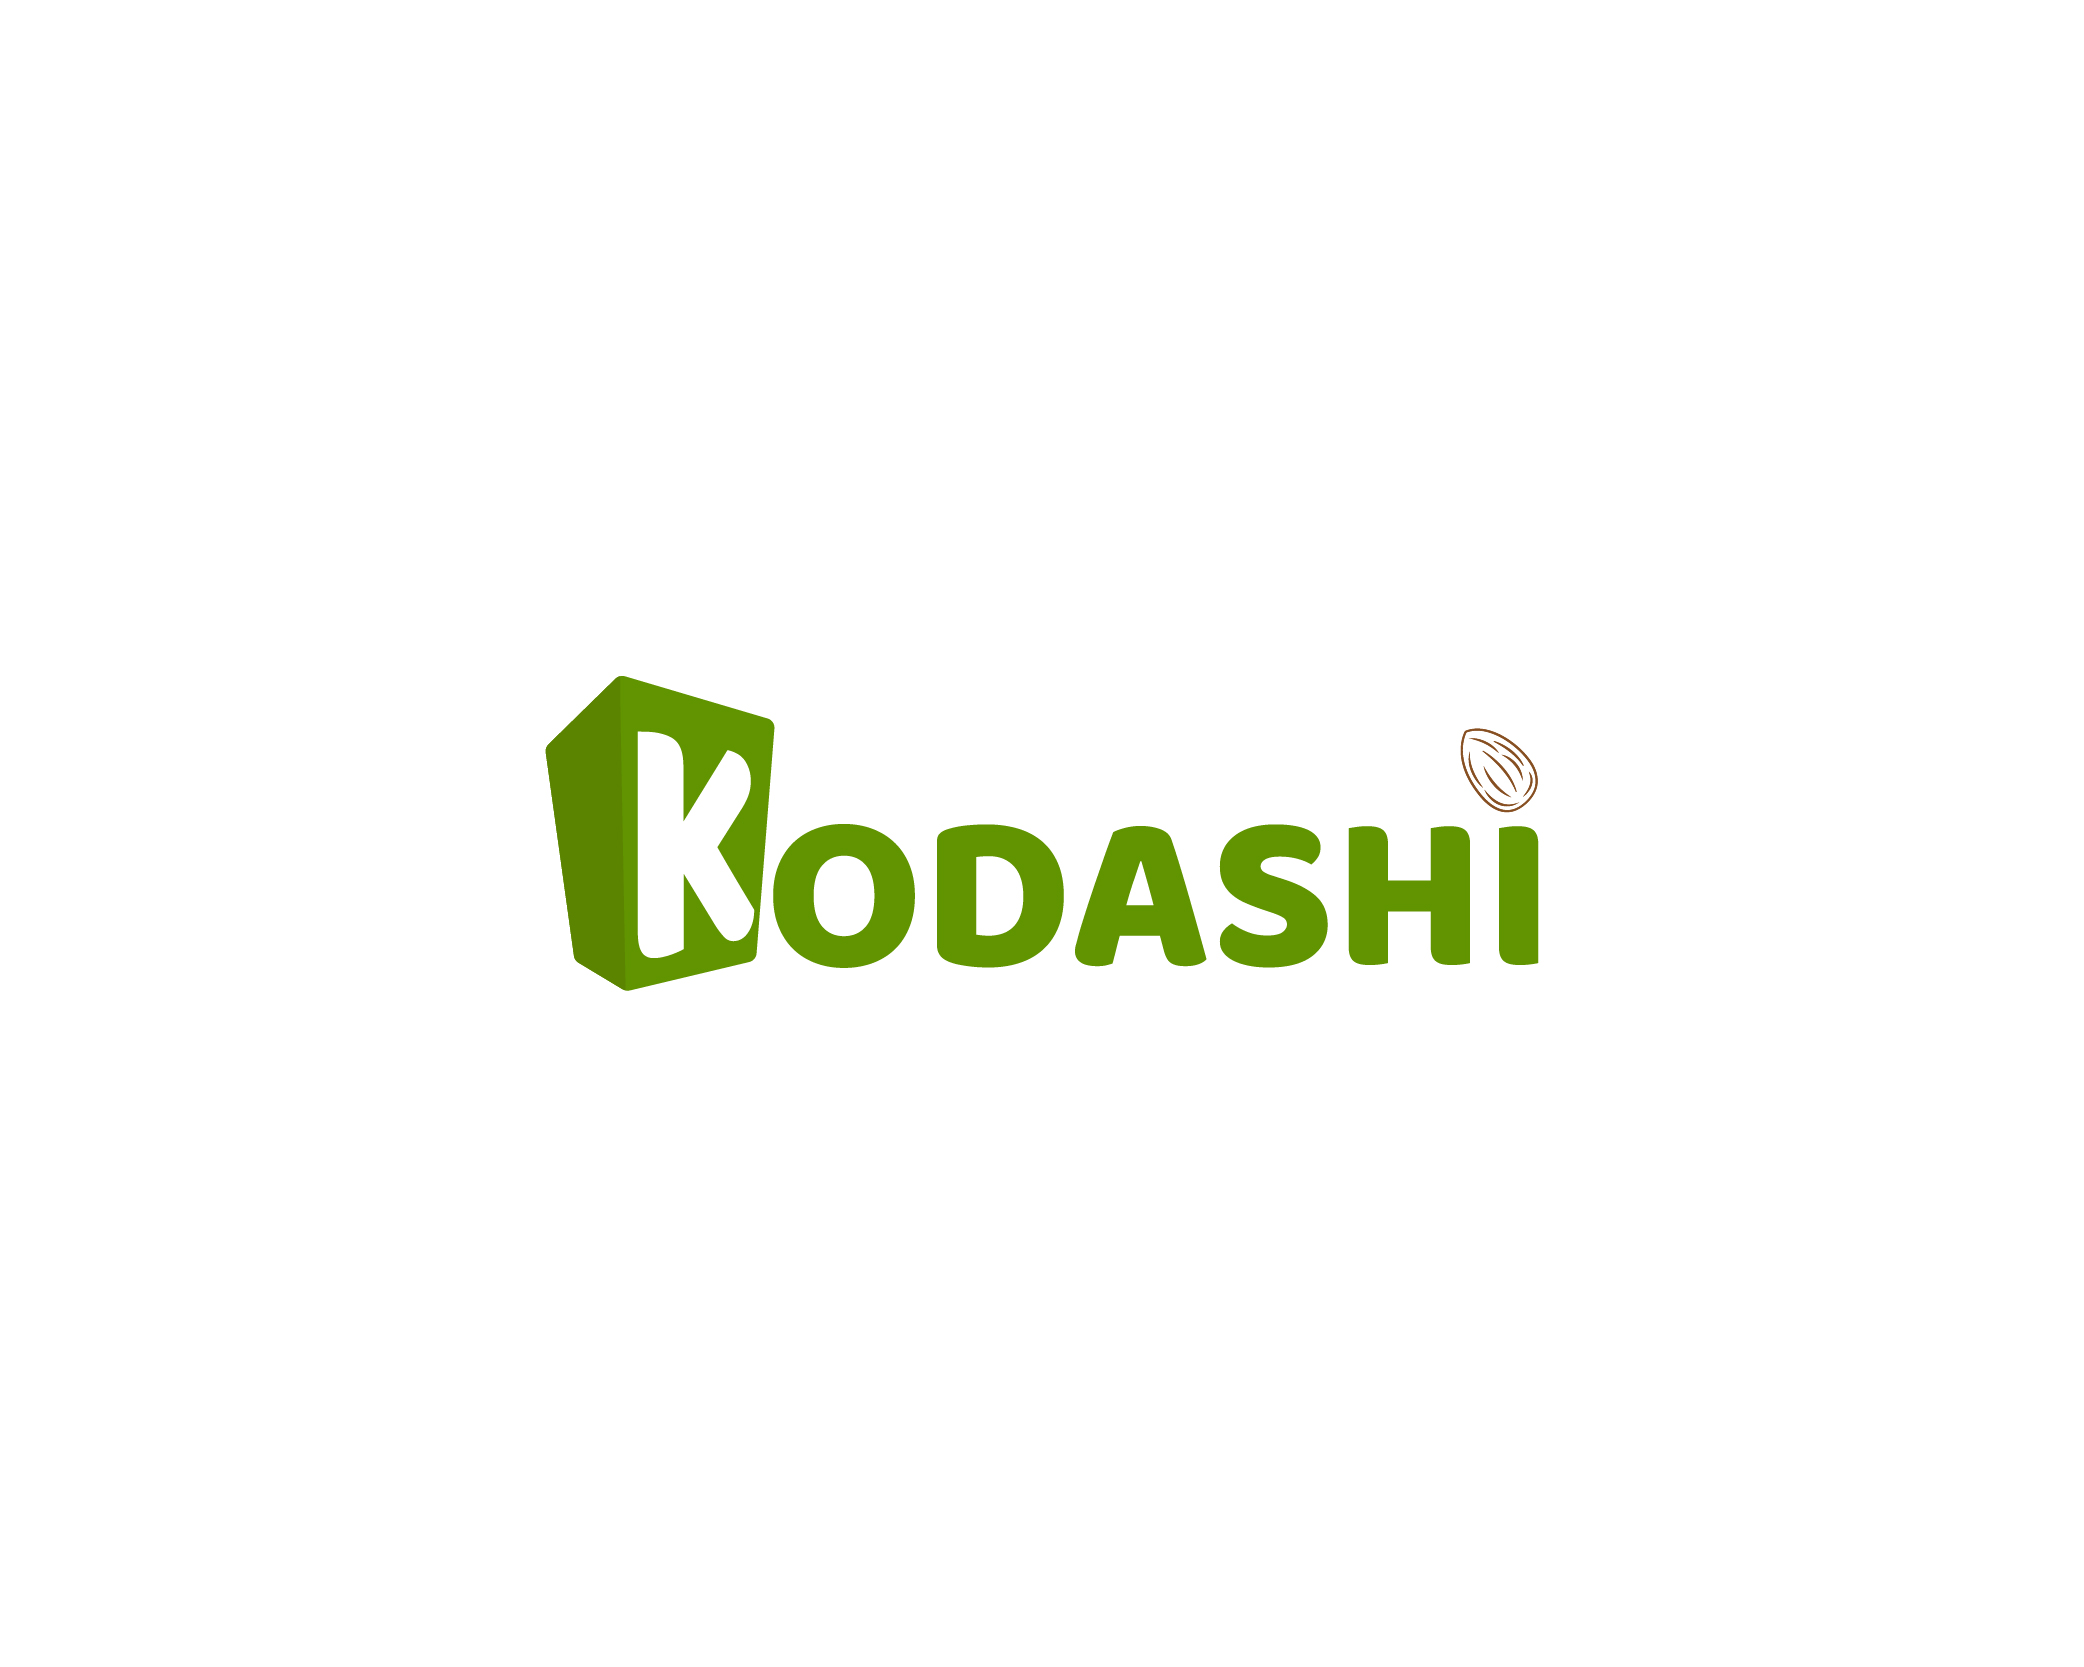 KODASHI